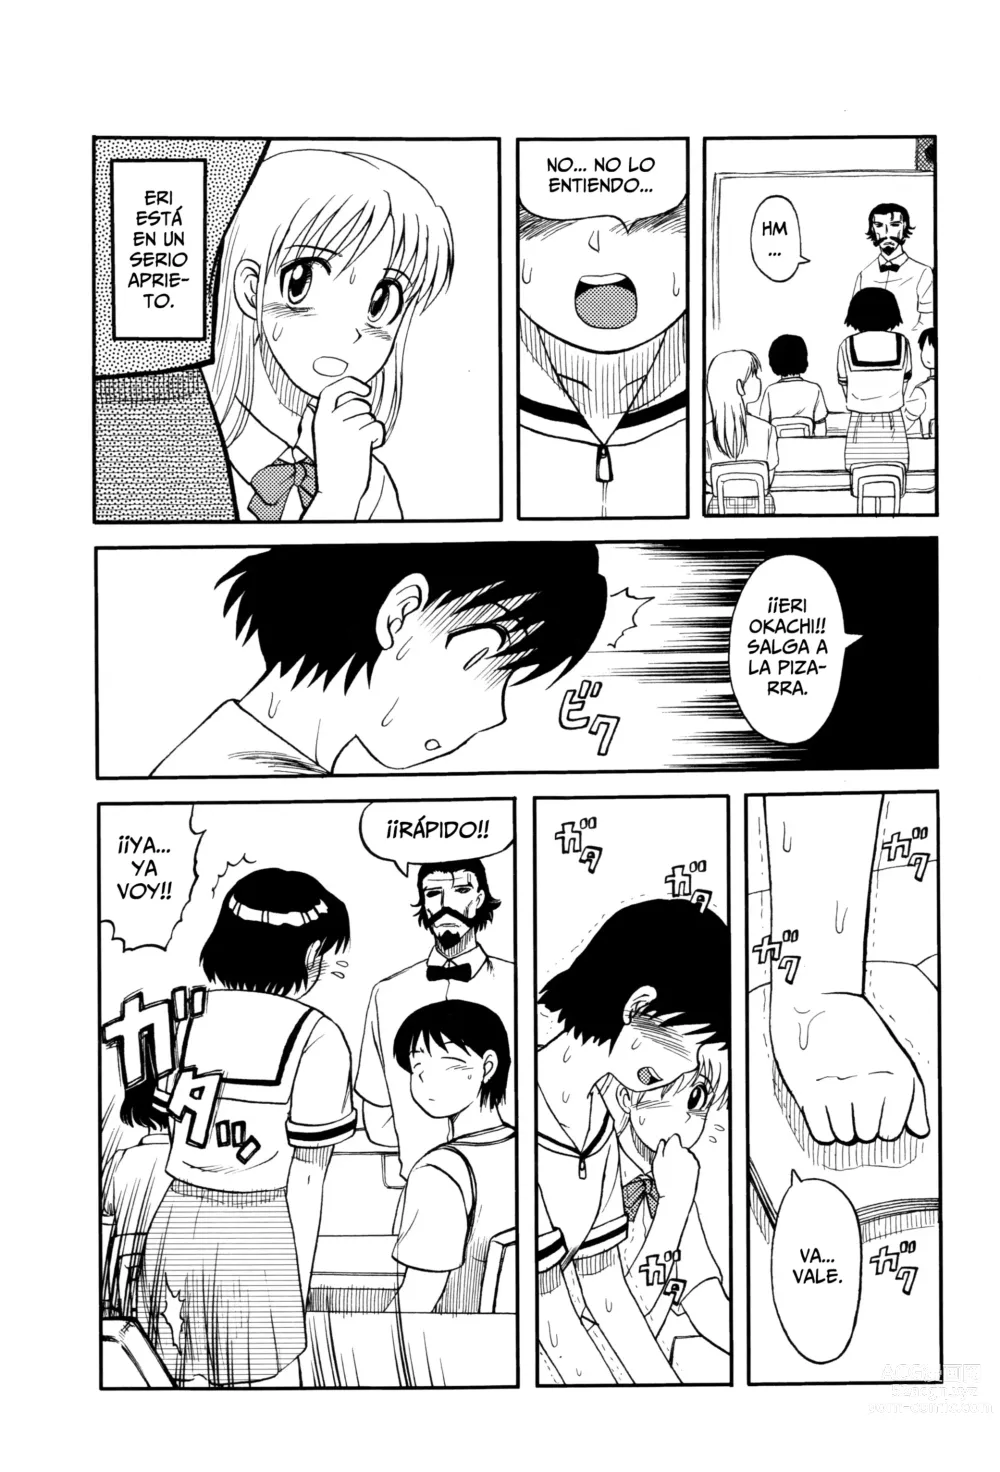 Page 3 of manga El Profesor Salvador Dice Que La Letra Con Sangre Entra